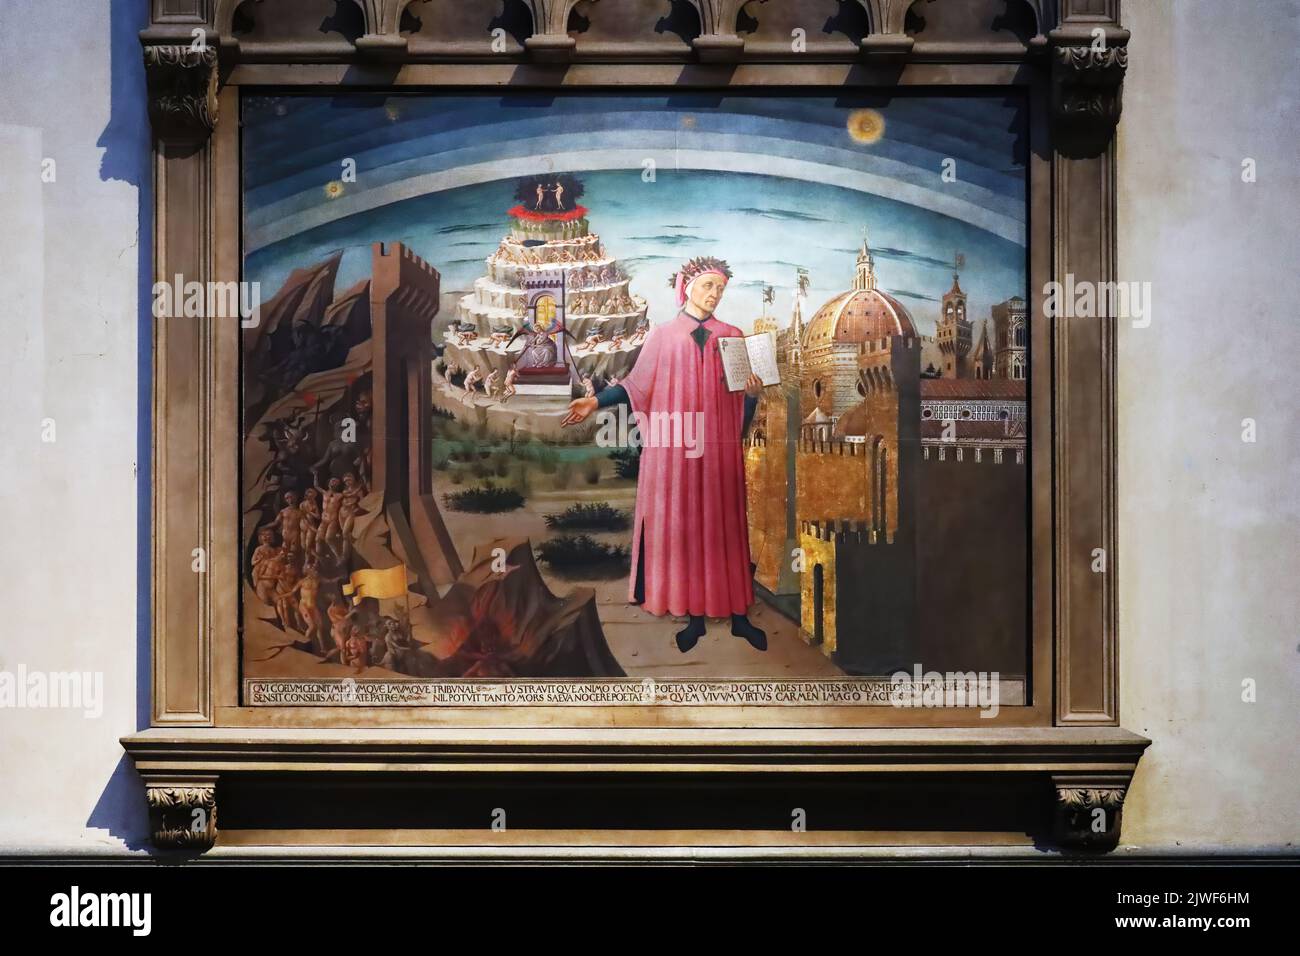 Image de Dante Alighieri à l'intérieur de la cathédrale de Florence Banque D'Images